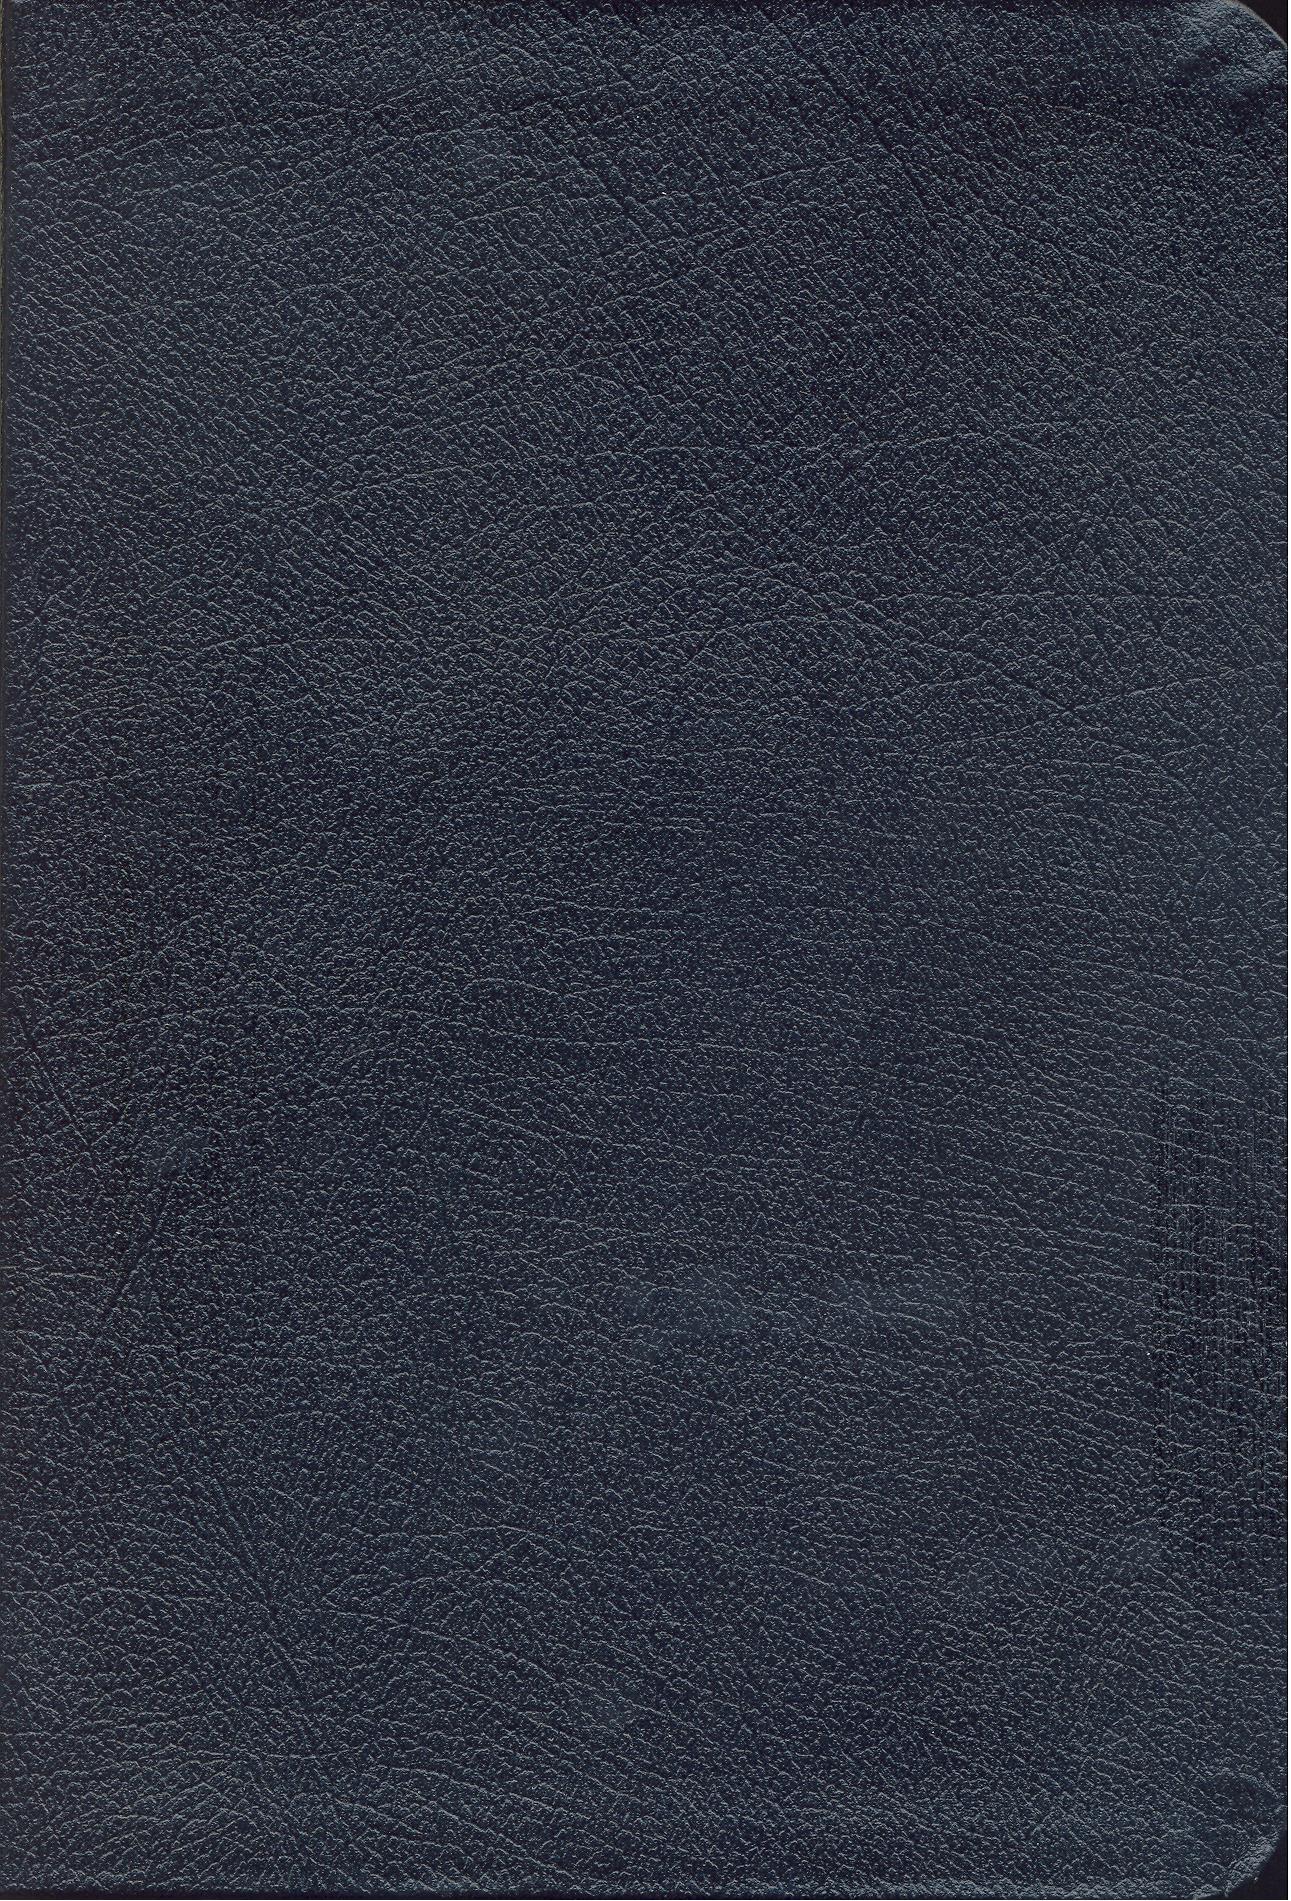 French Bible, Blue Vinyl, Thumb Index, Louis Segond 1910 La Sainte Bible